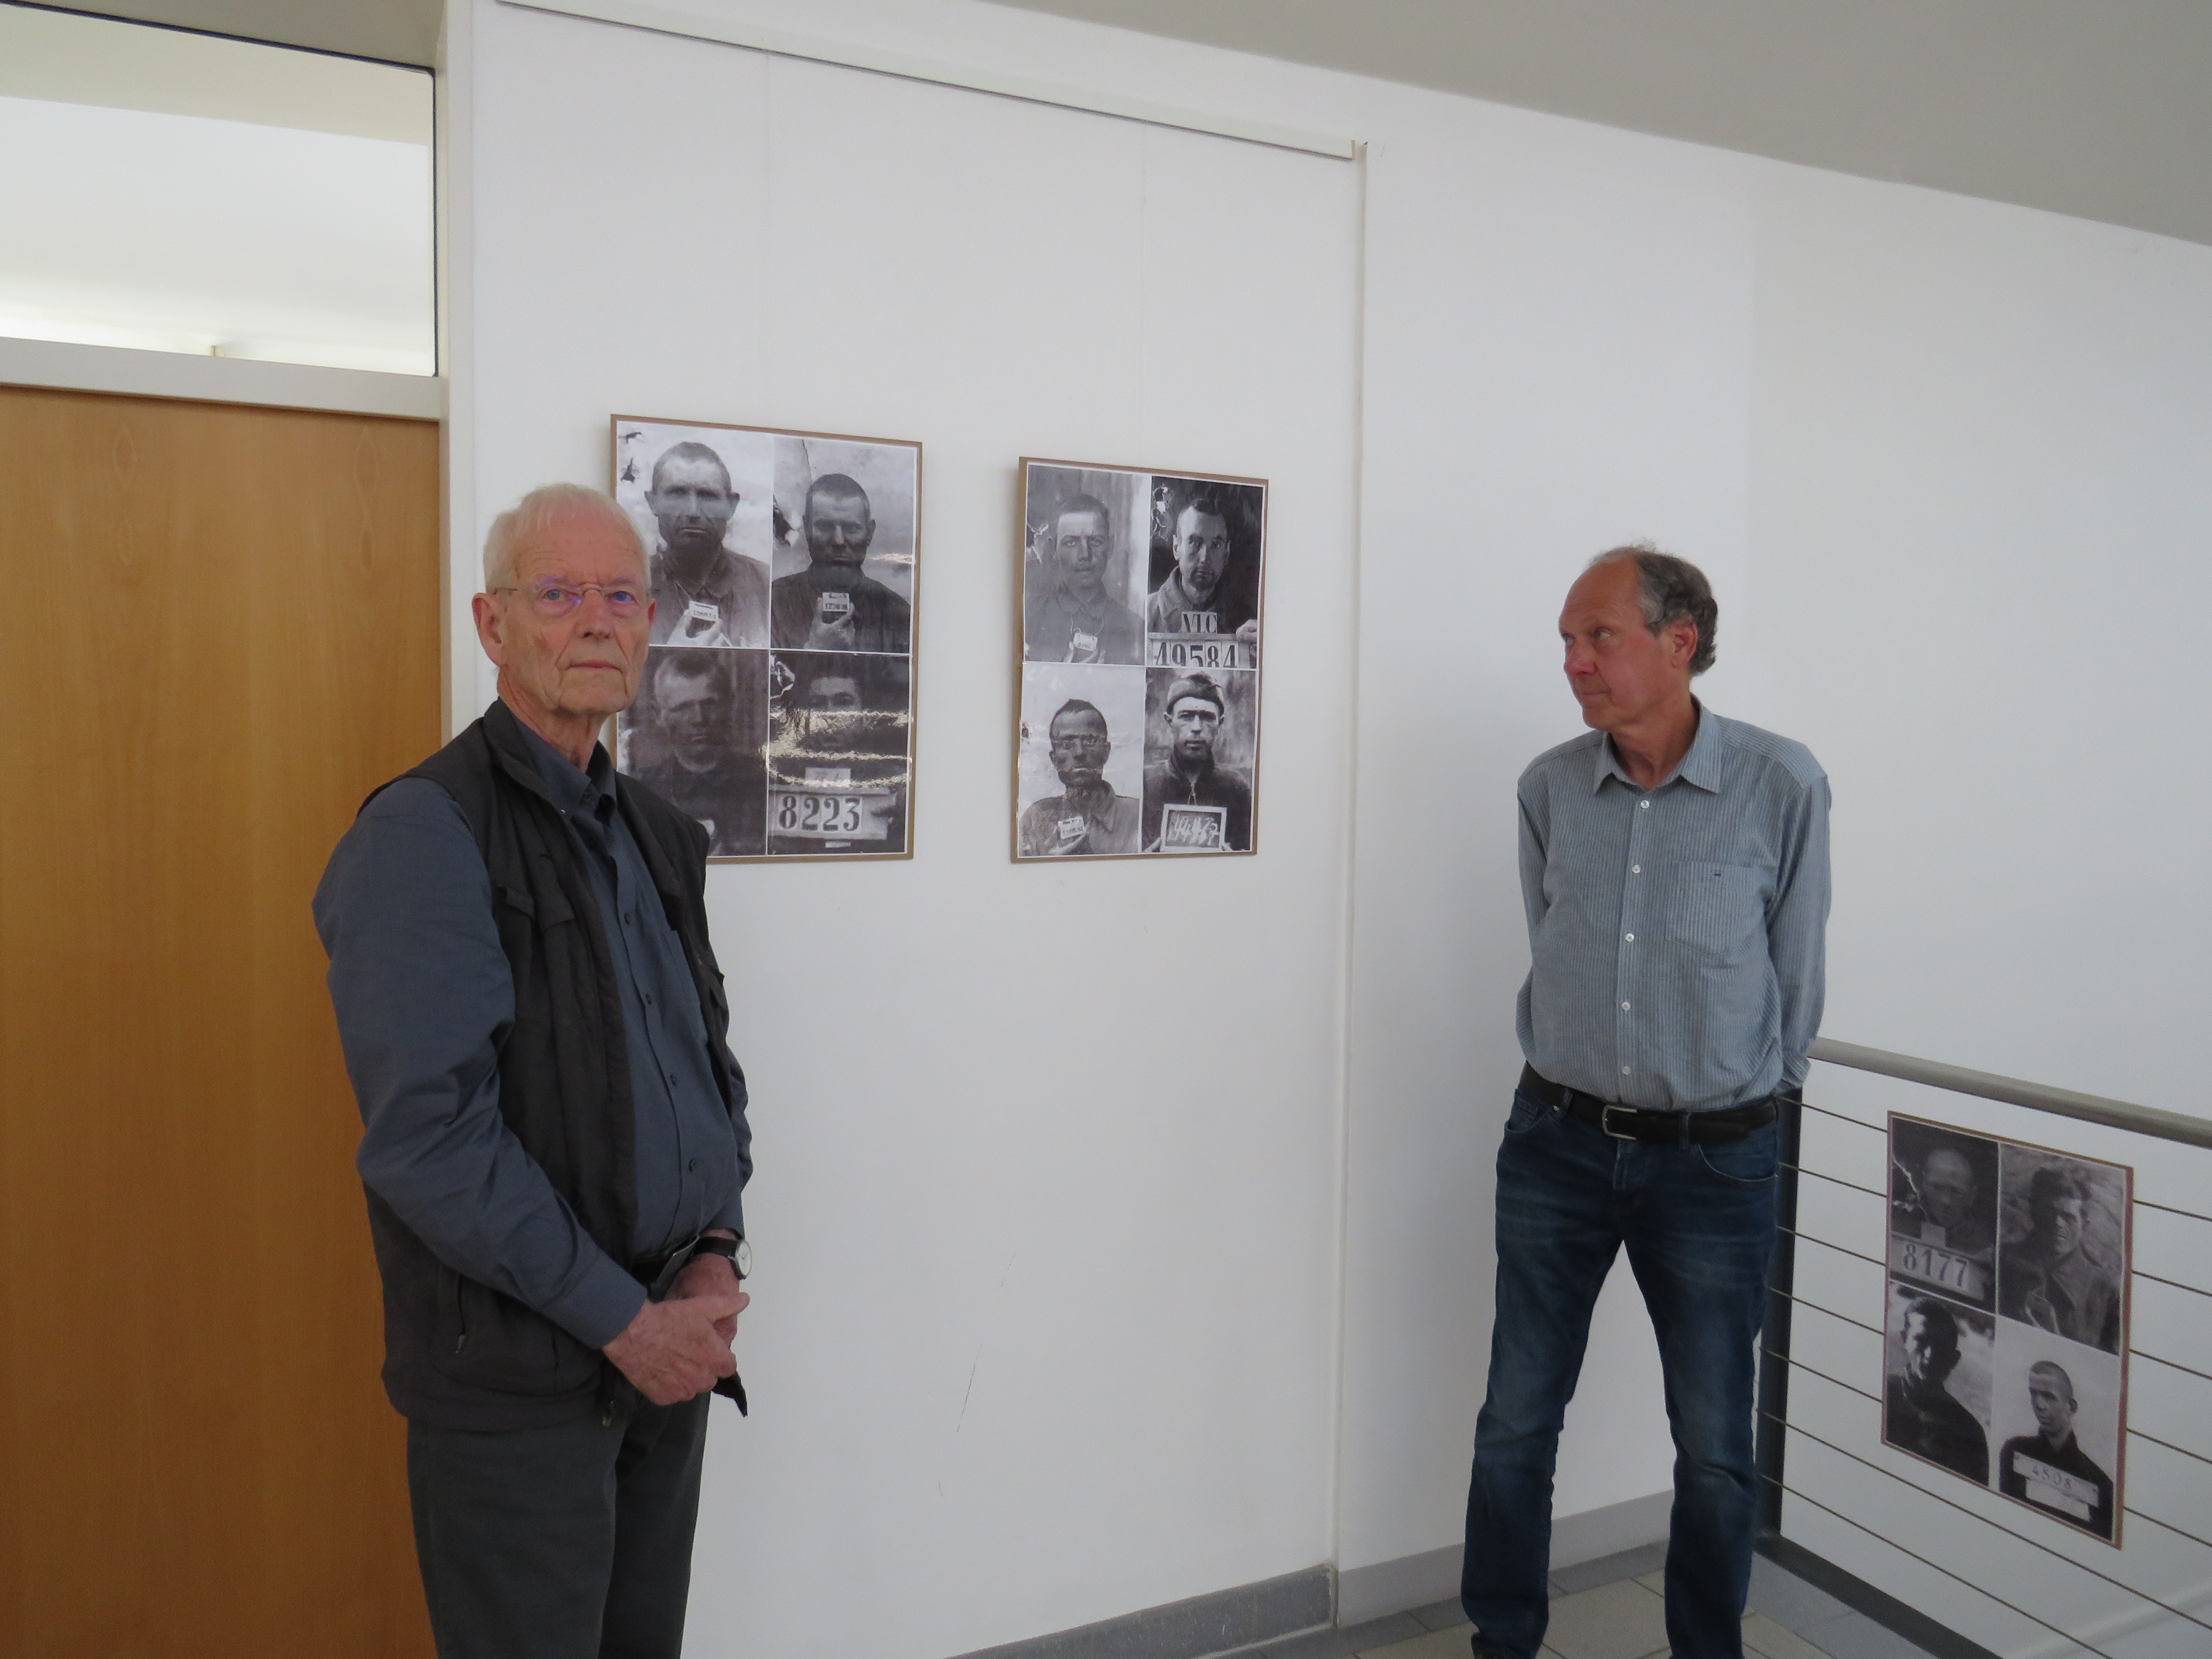 Foto(Gemeinde Lehre): Die beiden Ausstellungsgestalter Jens Dürrkopf und Uwe Otte führen persönlich durch die Fotoausstellung.